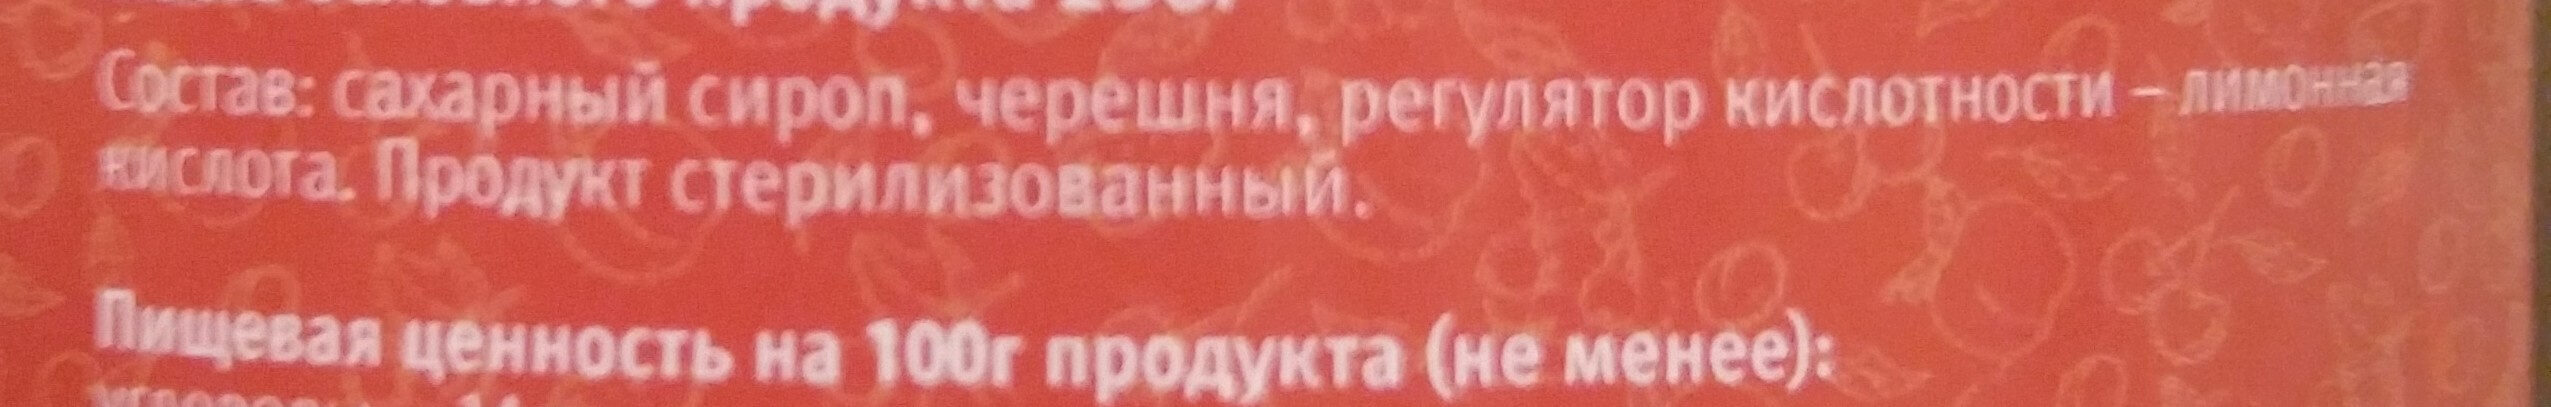 Компот черешневый - Ingredients - ru